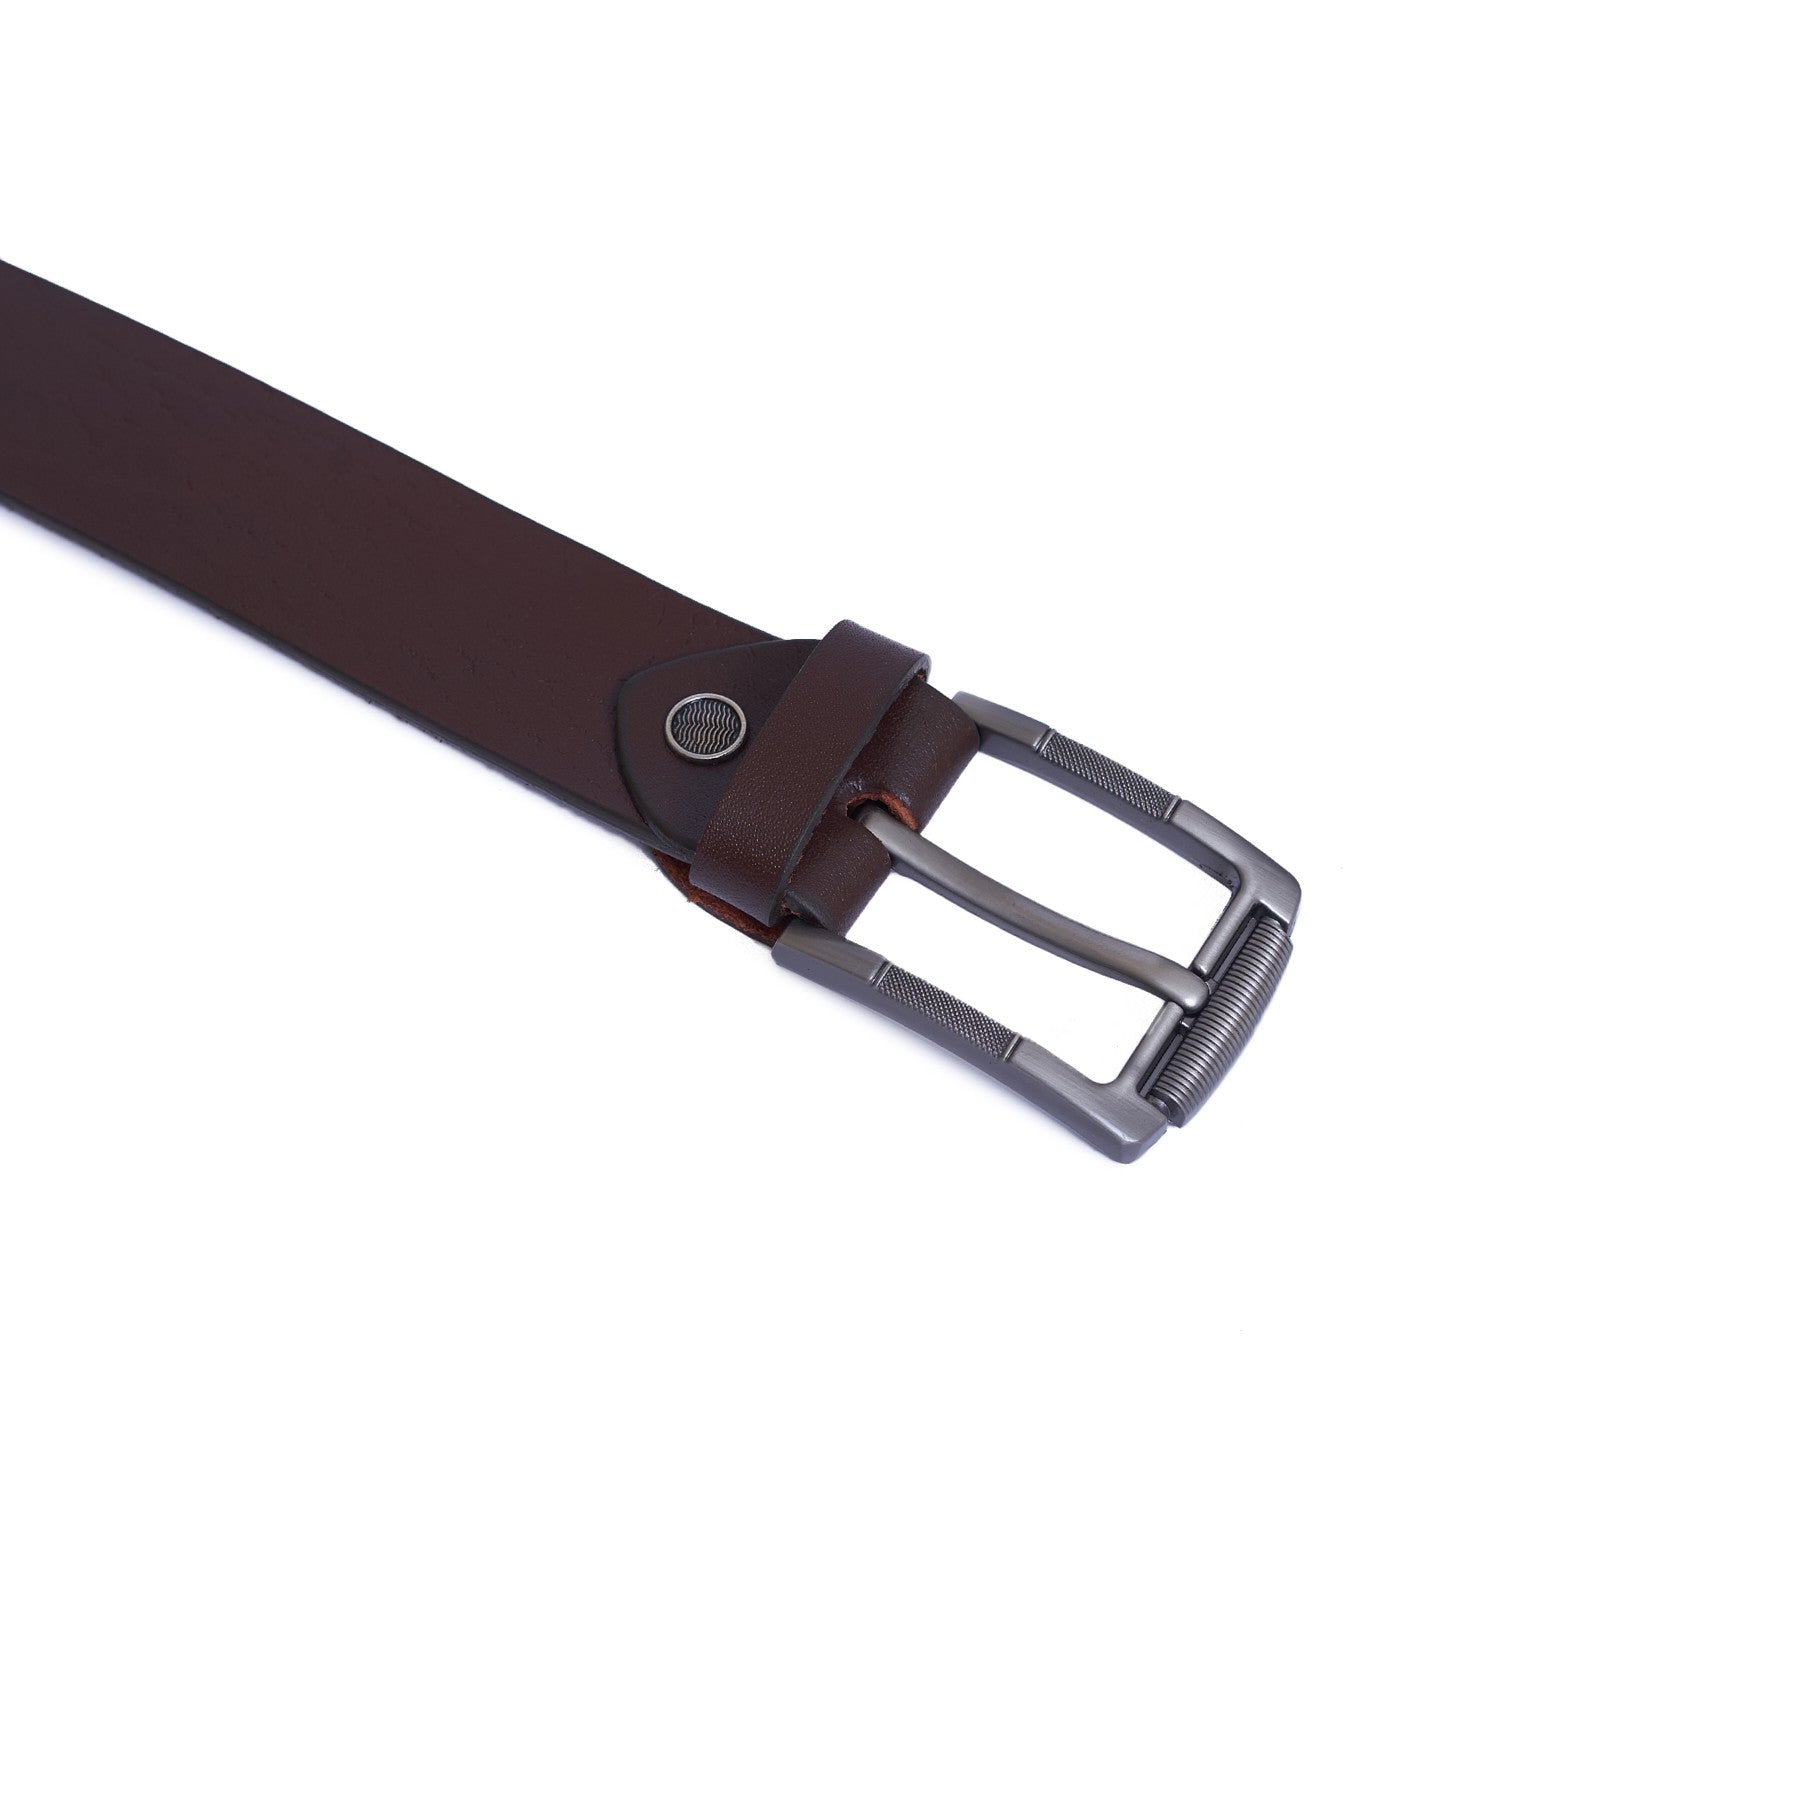 4 CM Super genuine leather Belt - Super Lux - Brown Color Model B9001